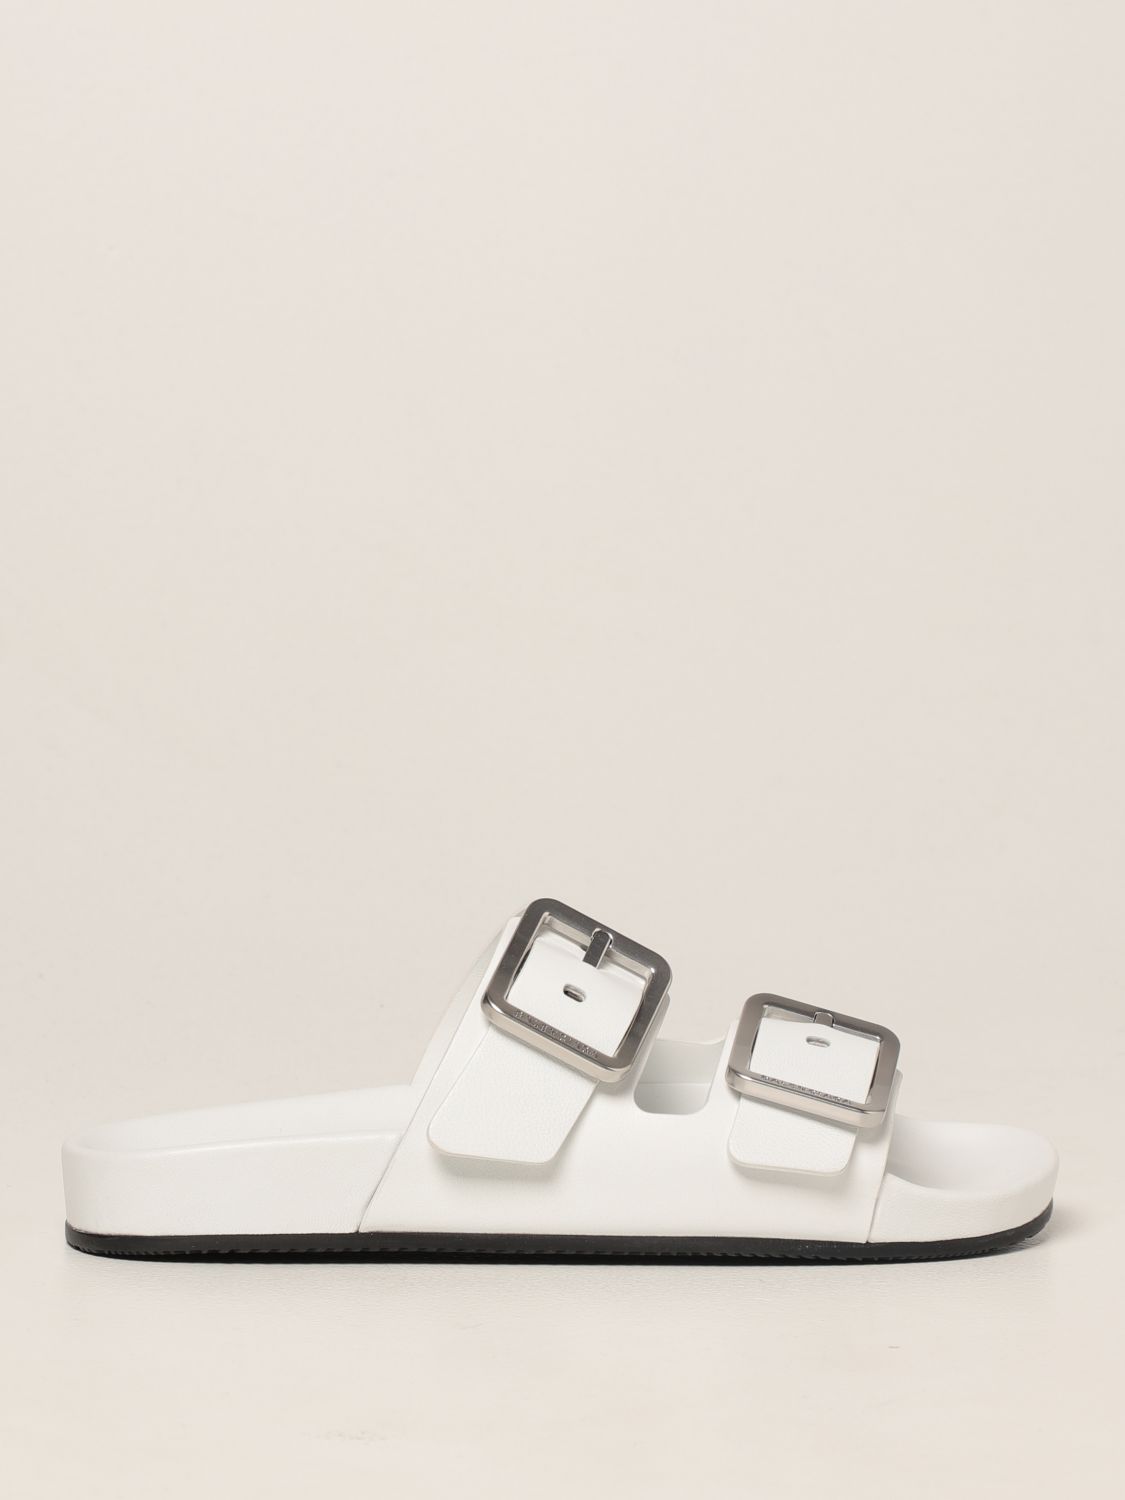 Sandalias planas Balenciaga: Zapatos mujer Balenciaga blanco 1